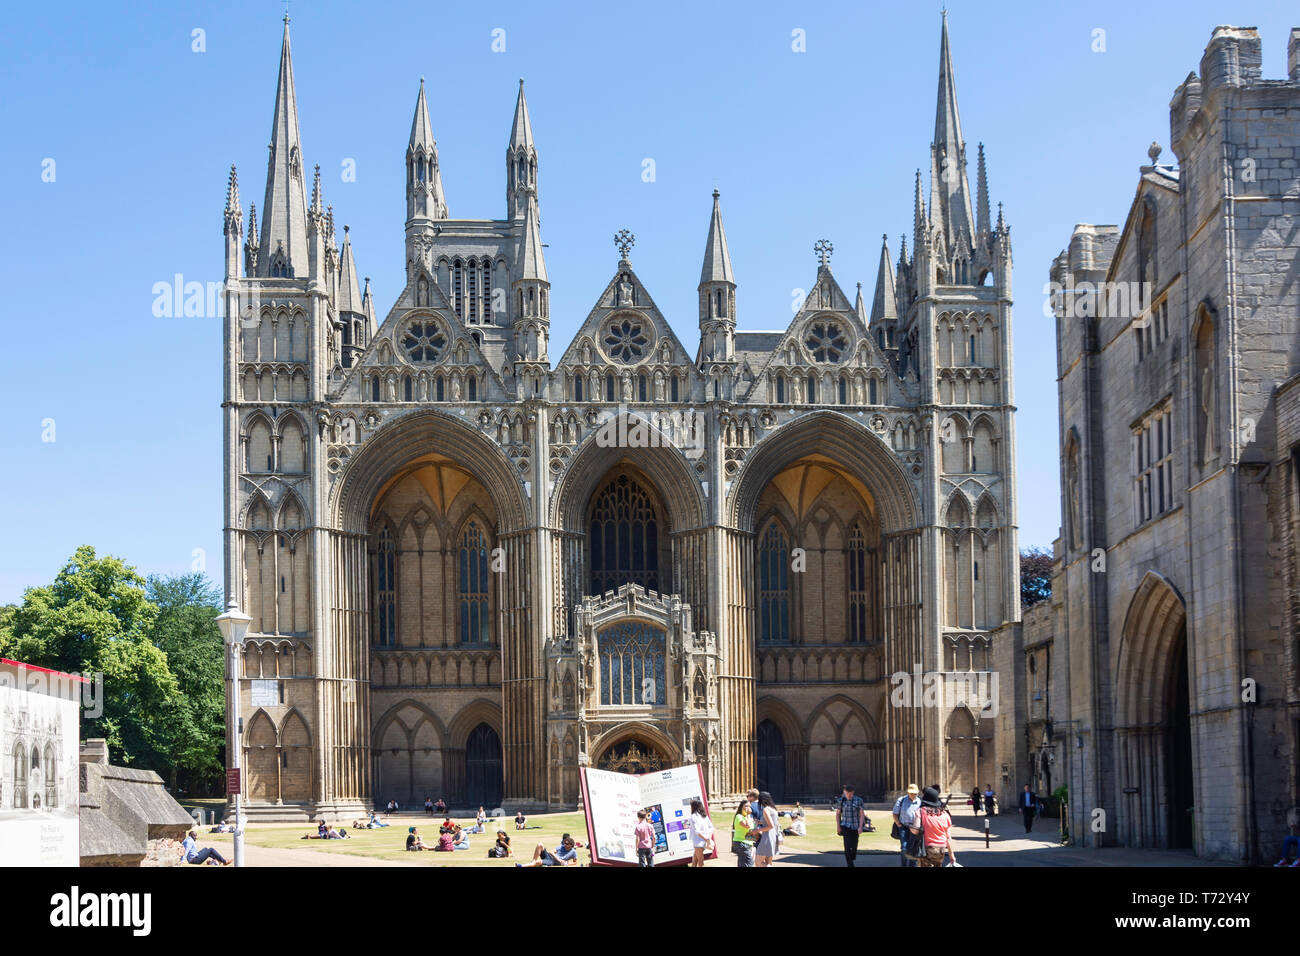 Avant de l'ouest, la cathédrale de Peterborough, à Peterborough, Cambridgeshire, Angleterre, Royaume-Uni Banque D'Images